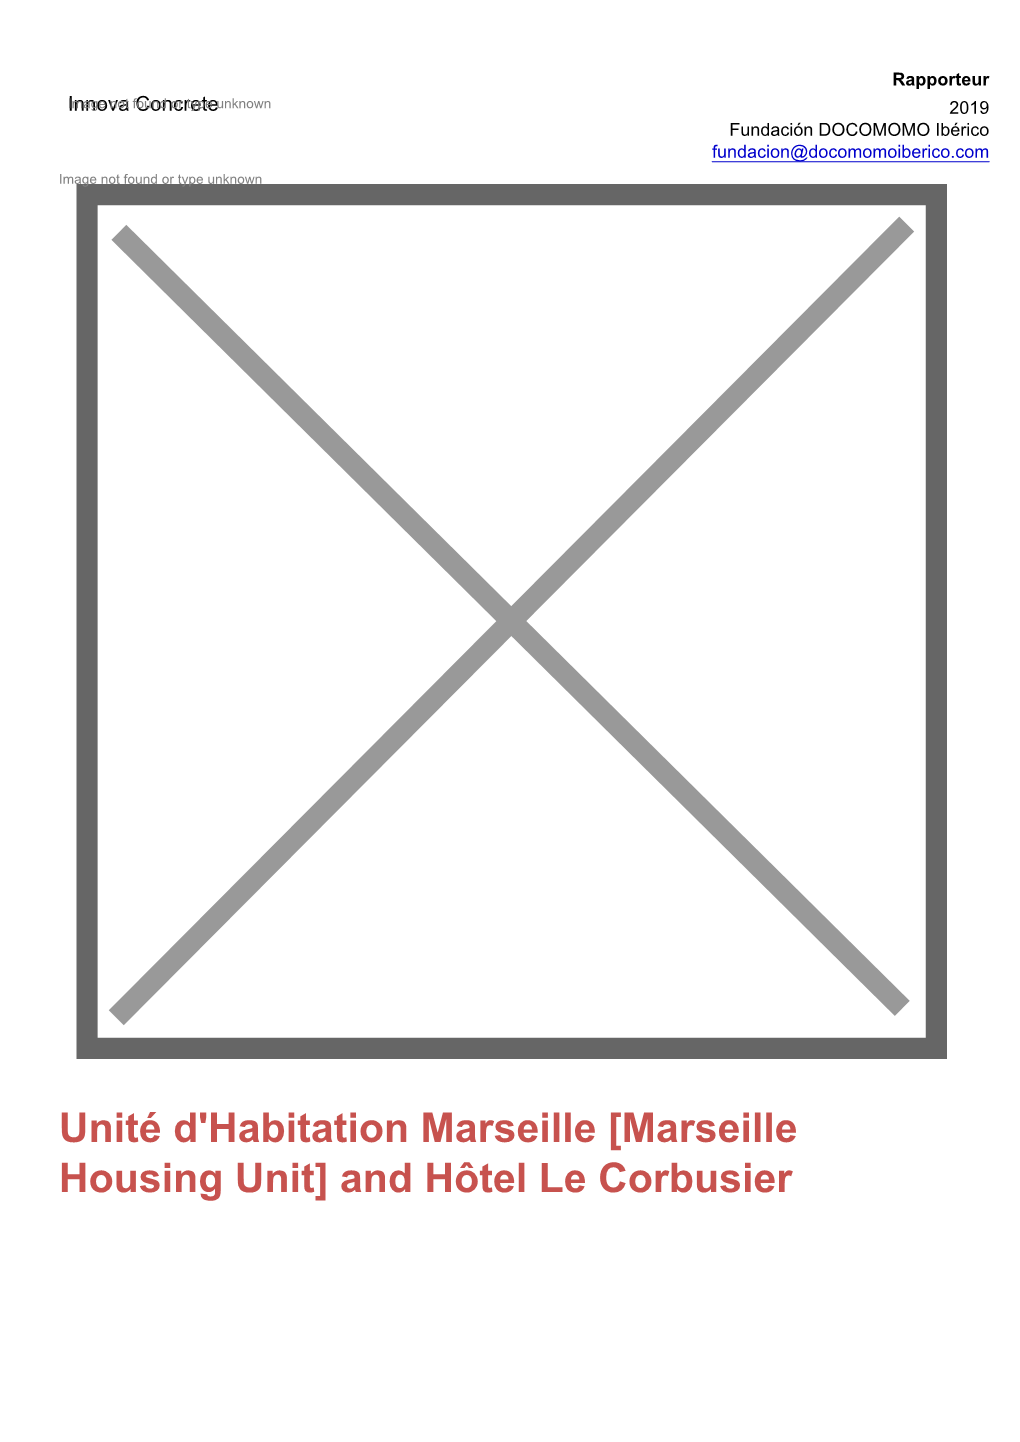 [Marseille Housing Unit] and Hôtel Le Corbusier